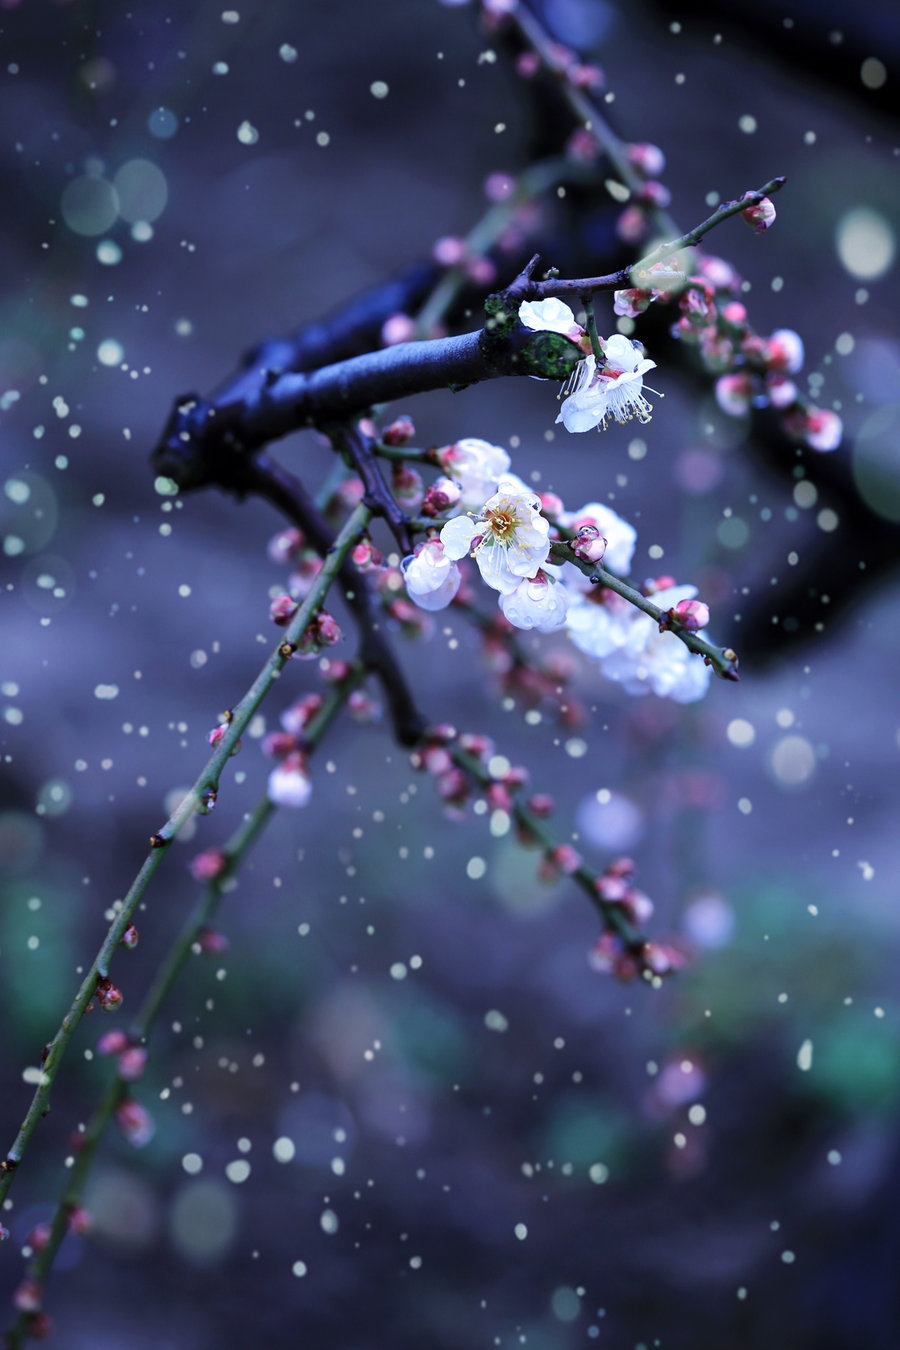 大图 手机看图 作品简介 前几天,上海飘起了短暂的雪花,雪中的梅花